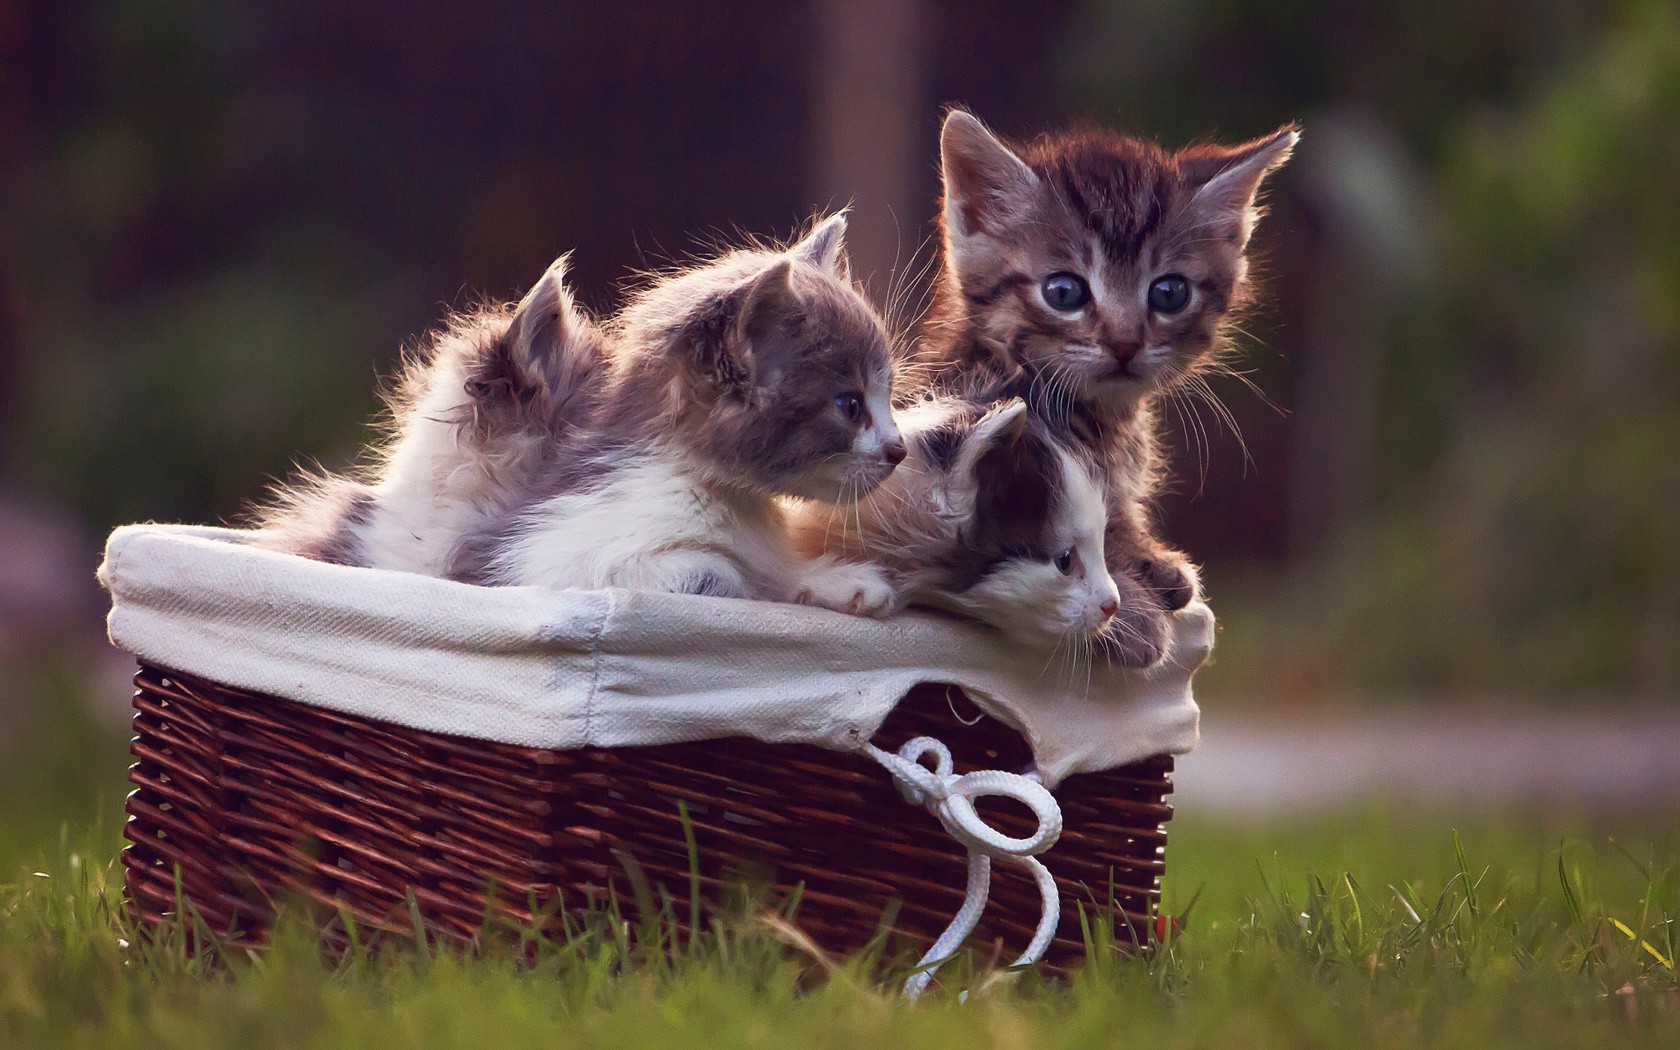 animals, Cat, Kittens, Baskets, Grass Wallpaper